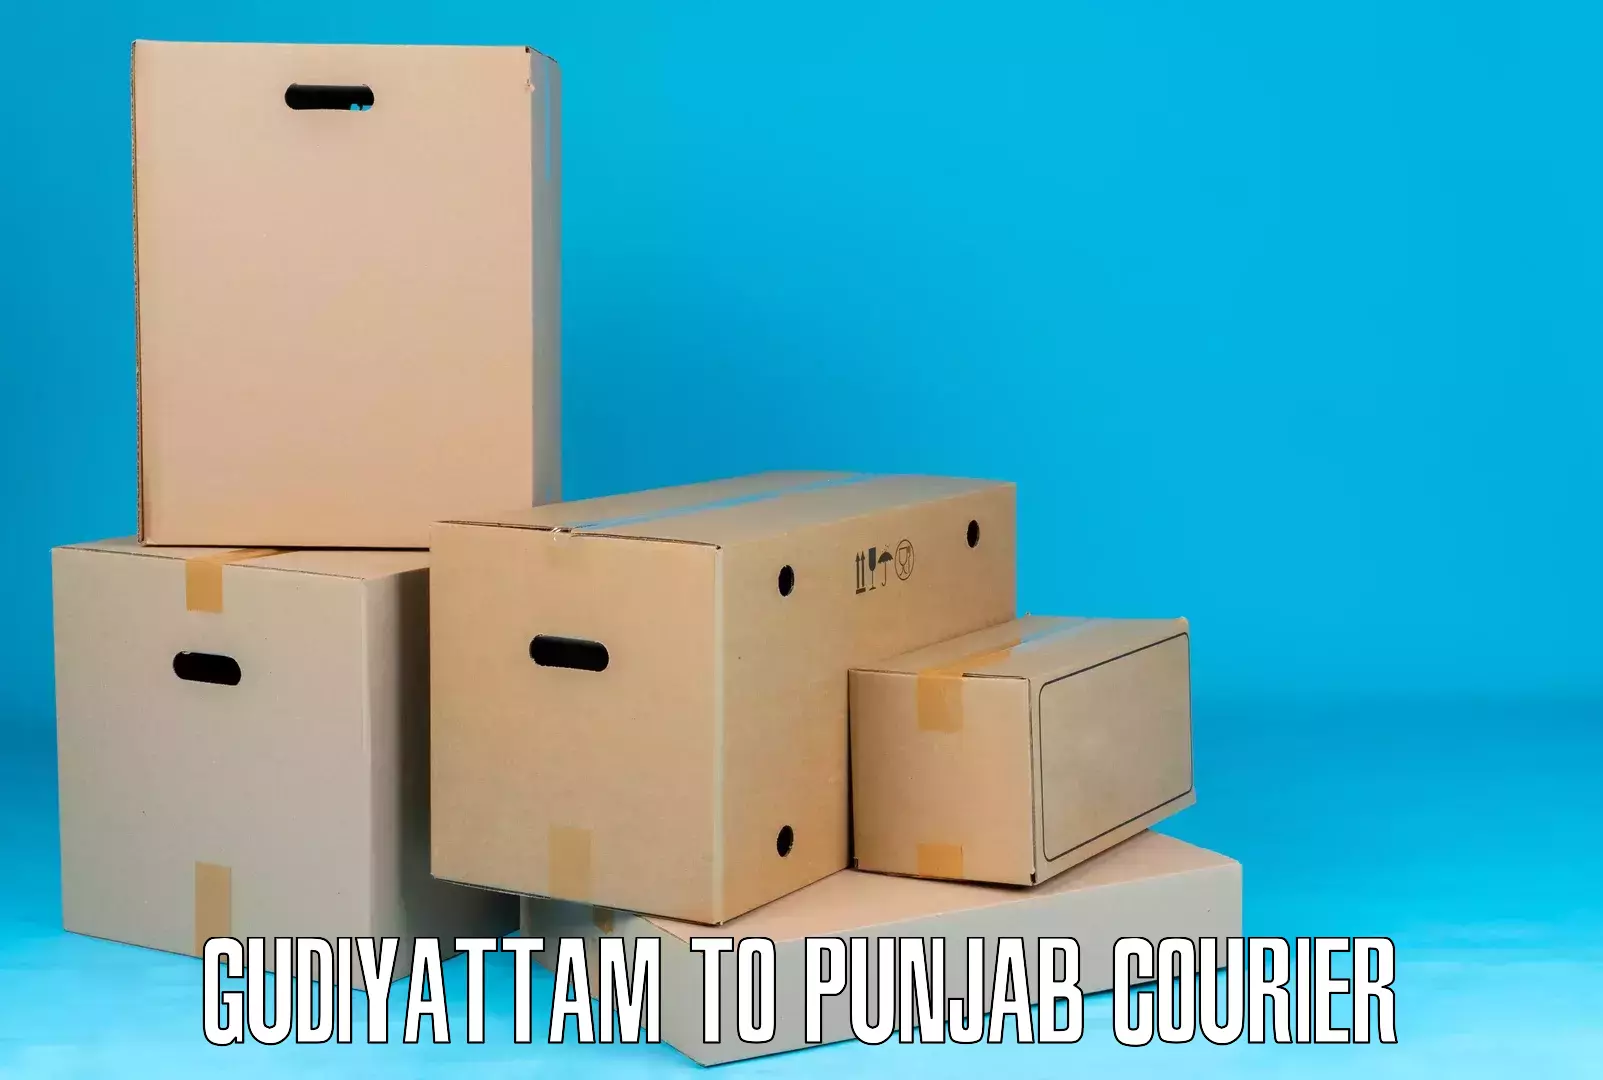 Parcel delivery Gudiyattam to Punjab